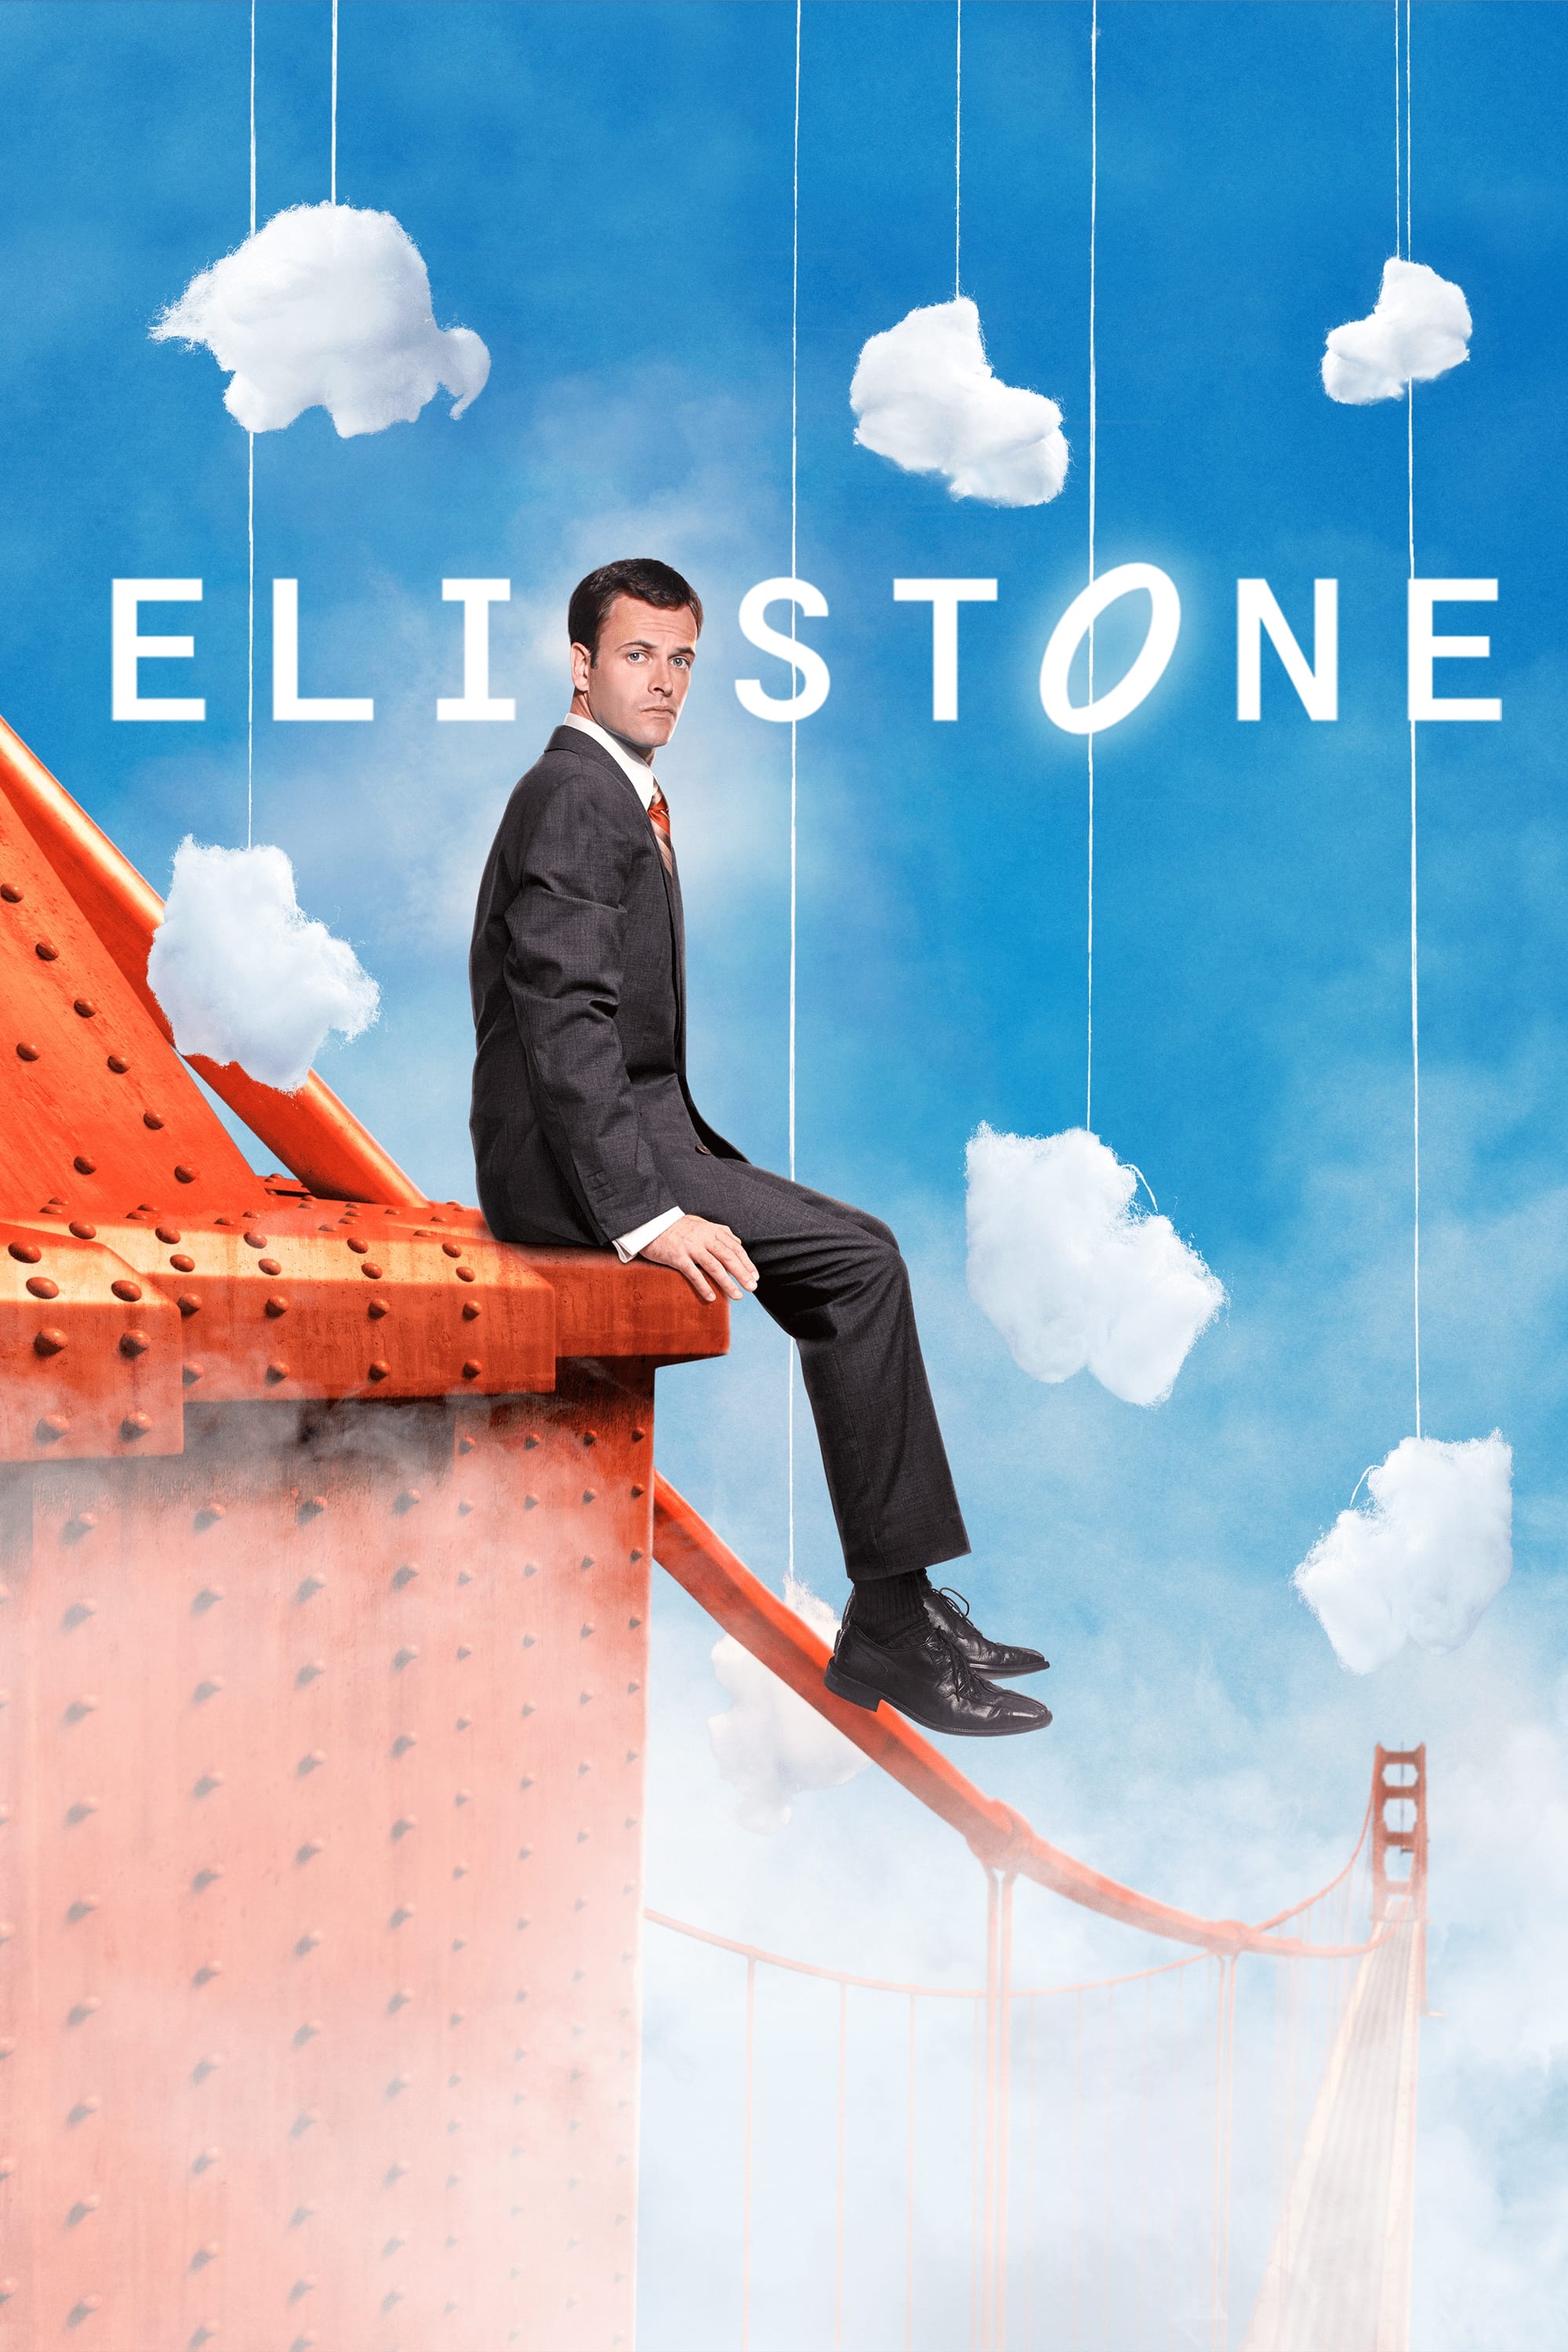 Eli Stone (2008)